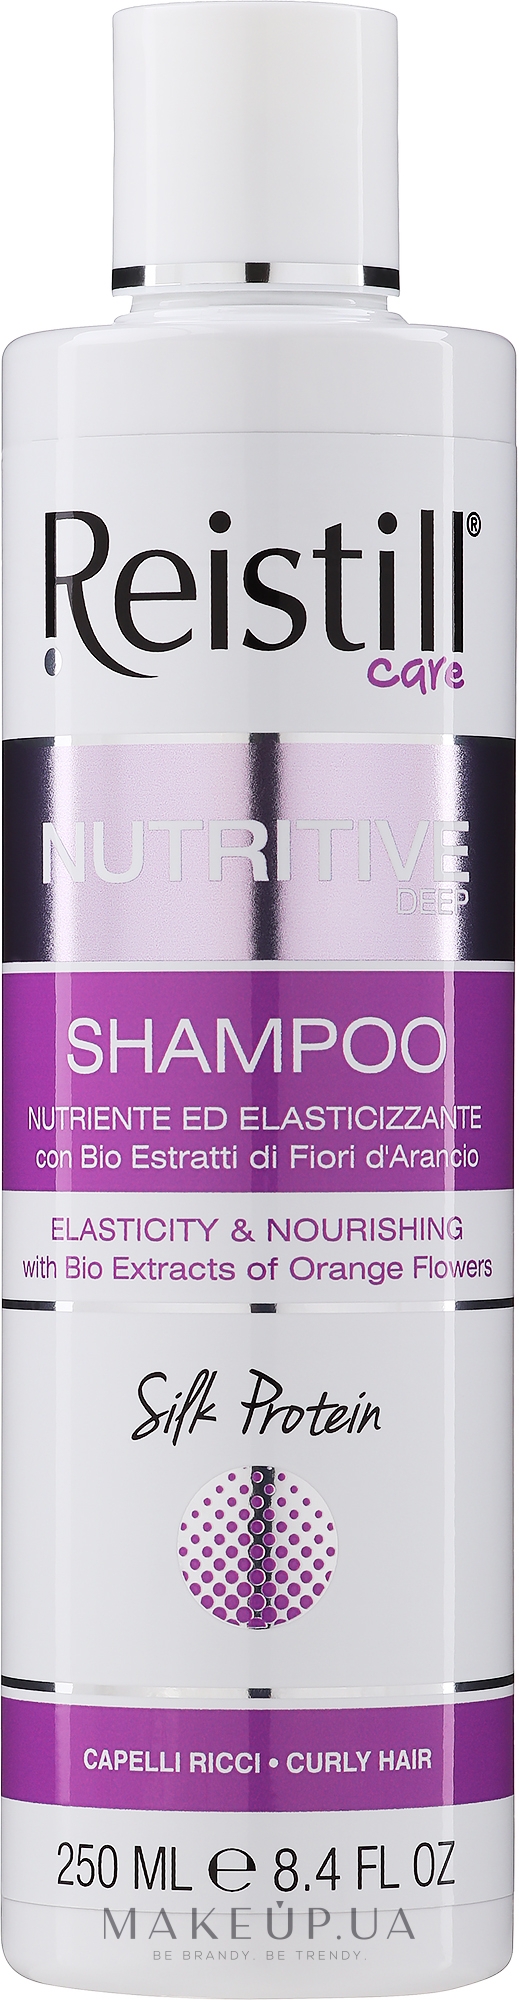 Шампунь для волос "Питание и Эластичность" - Reistill Nutritive Deep Shampoo — фото 250ml